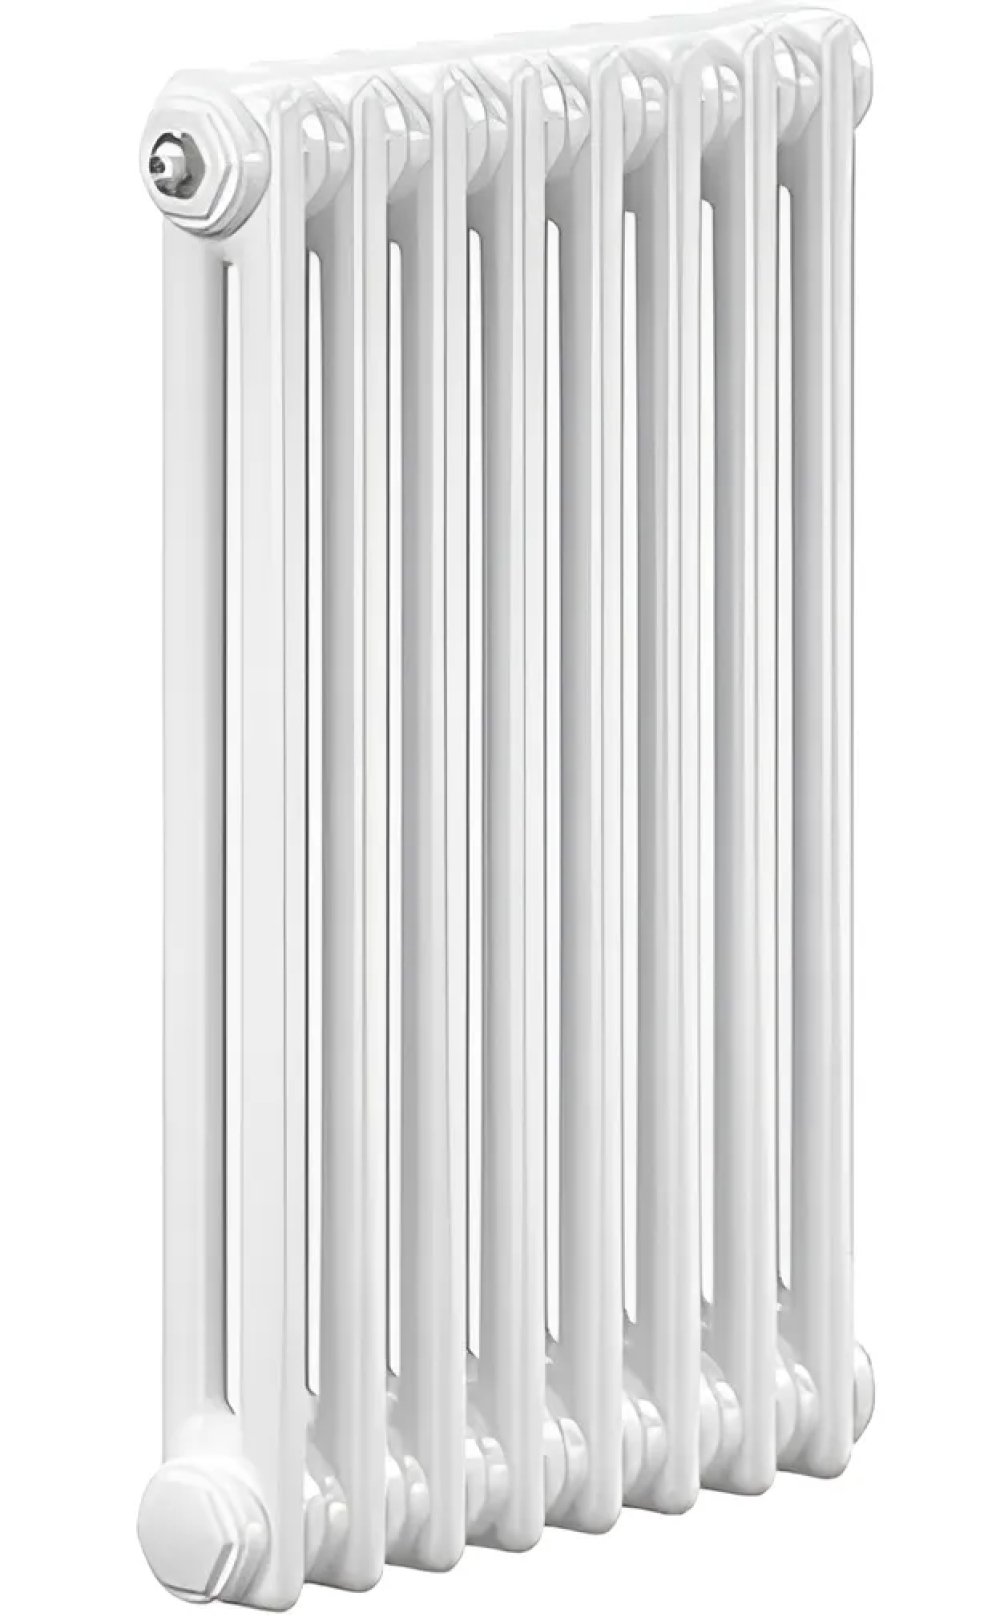 Радиаторы стальные трубчатые IRSAP Tesi 2 высота 1800 мм, 3-24 секций, присоединение резьбовое - 1/2″, нижнее подключение - термостат сверху T25, теплоотдача 475-3802 Вт, цвет - белый